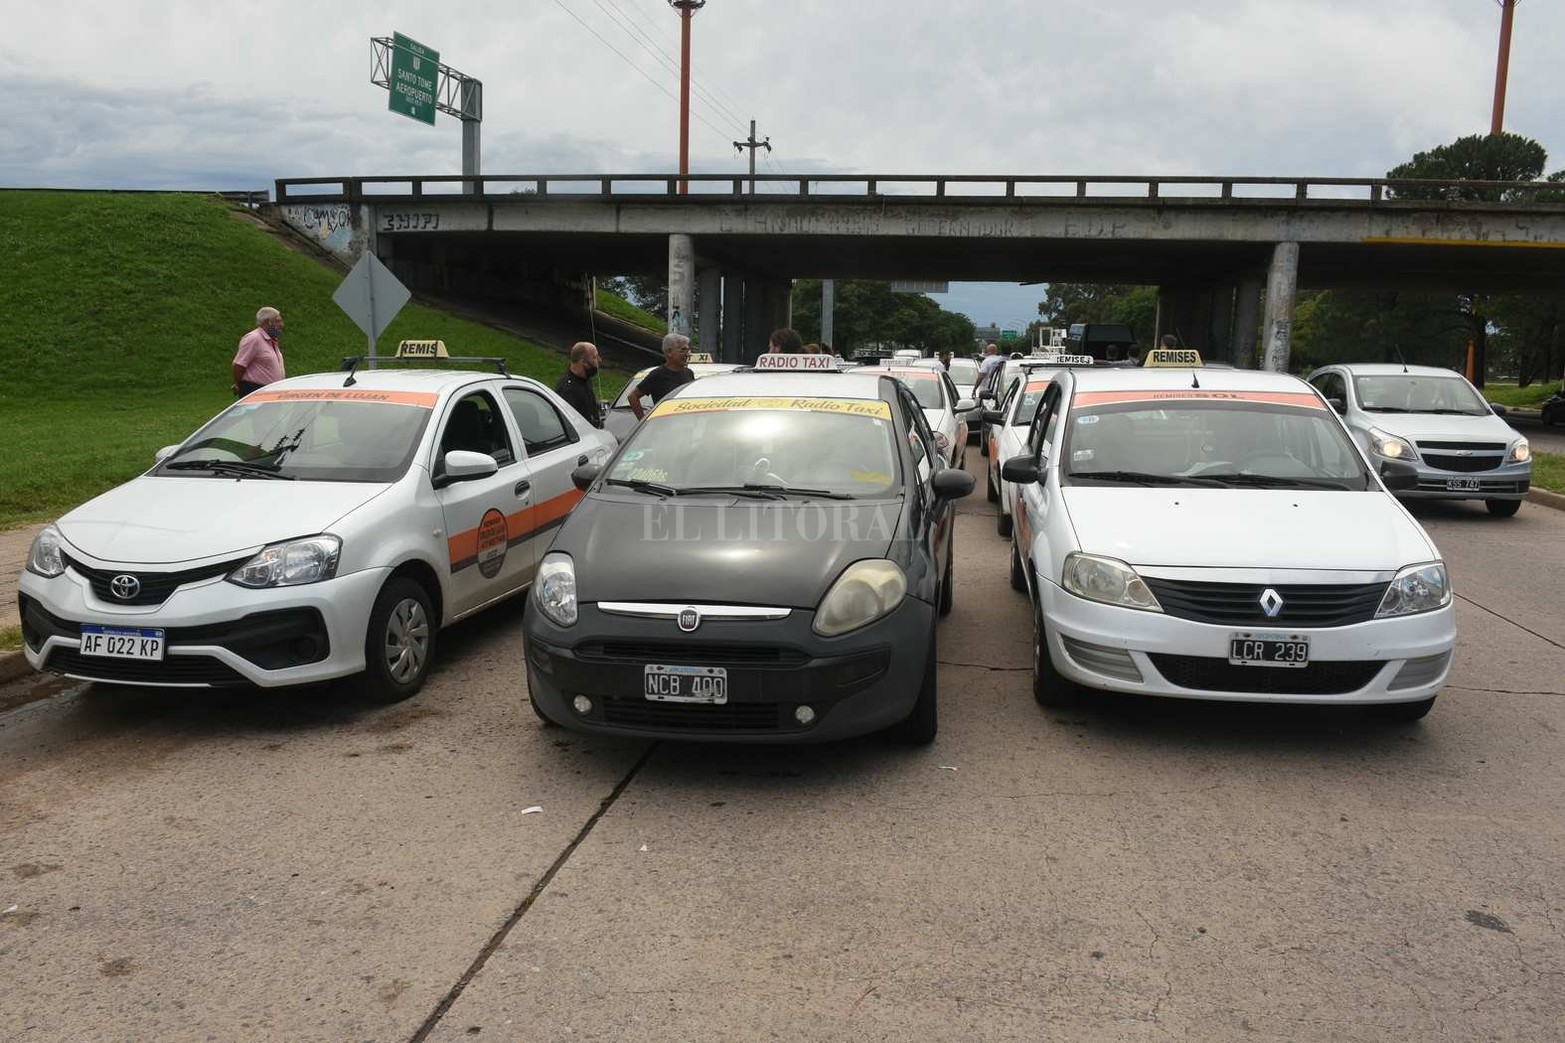 Caos y demoras. Protesta de taxistas santafesinos tras el ataque a un compañero
Los trabajadores se concentran en el rulo de Cilsa. Cortan el tránsito a Santo Tomé. Reclaman una respuesta a las autoridades.